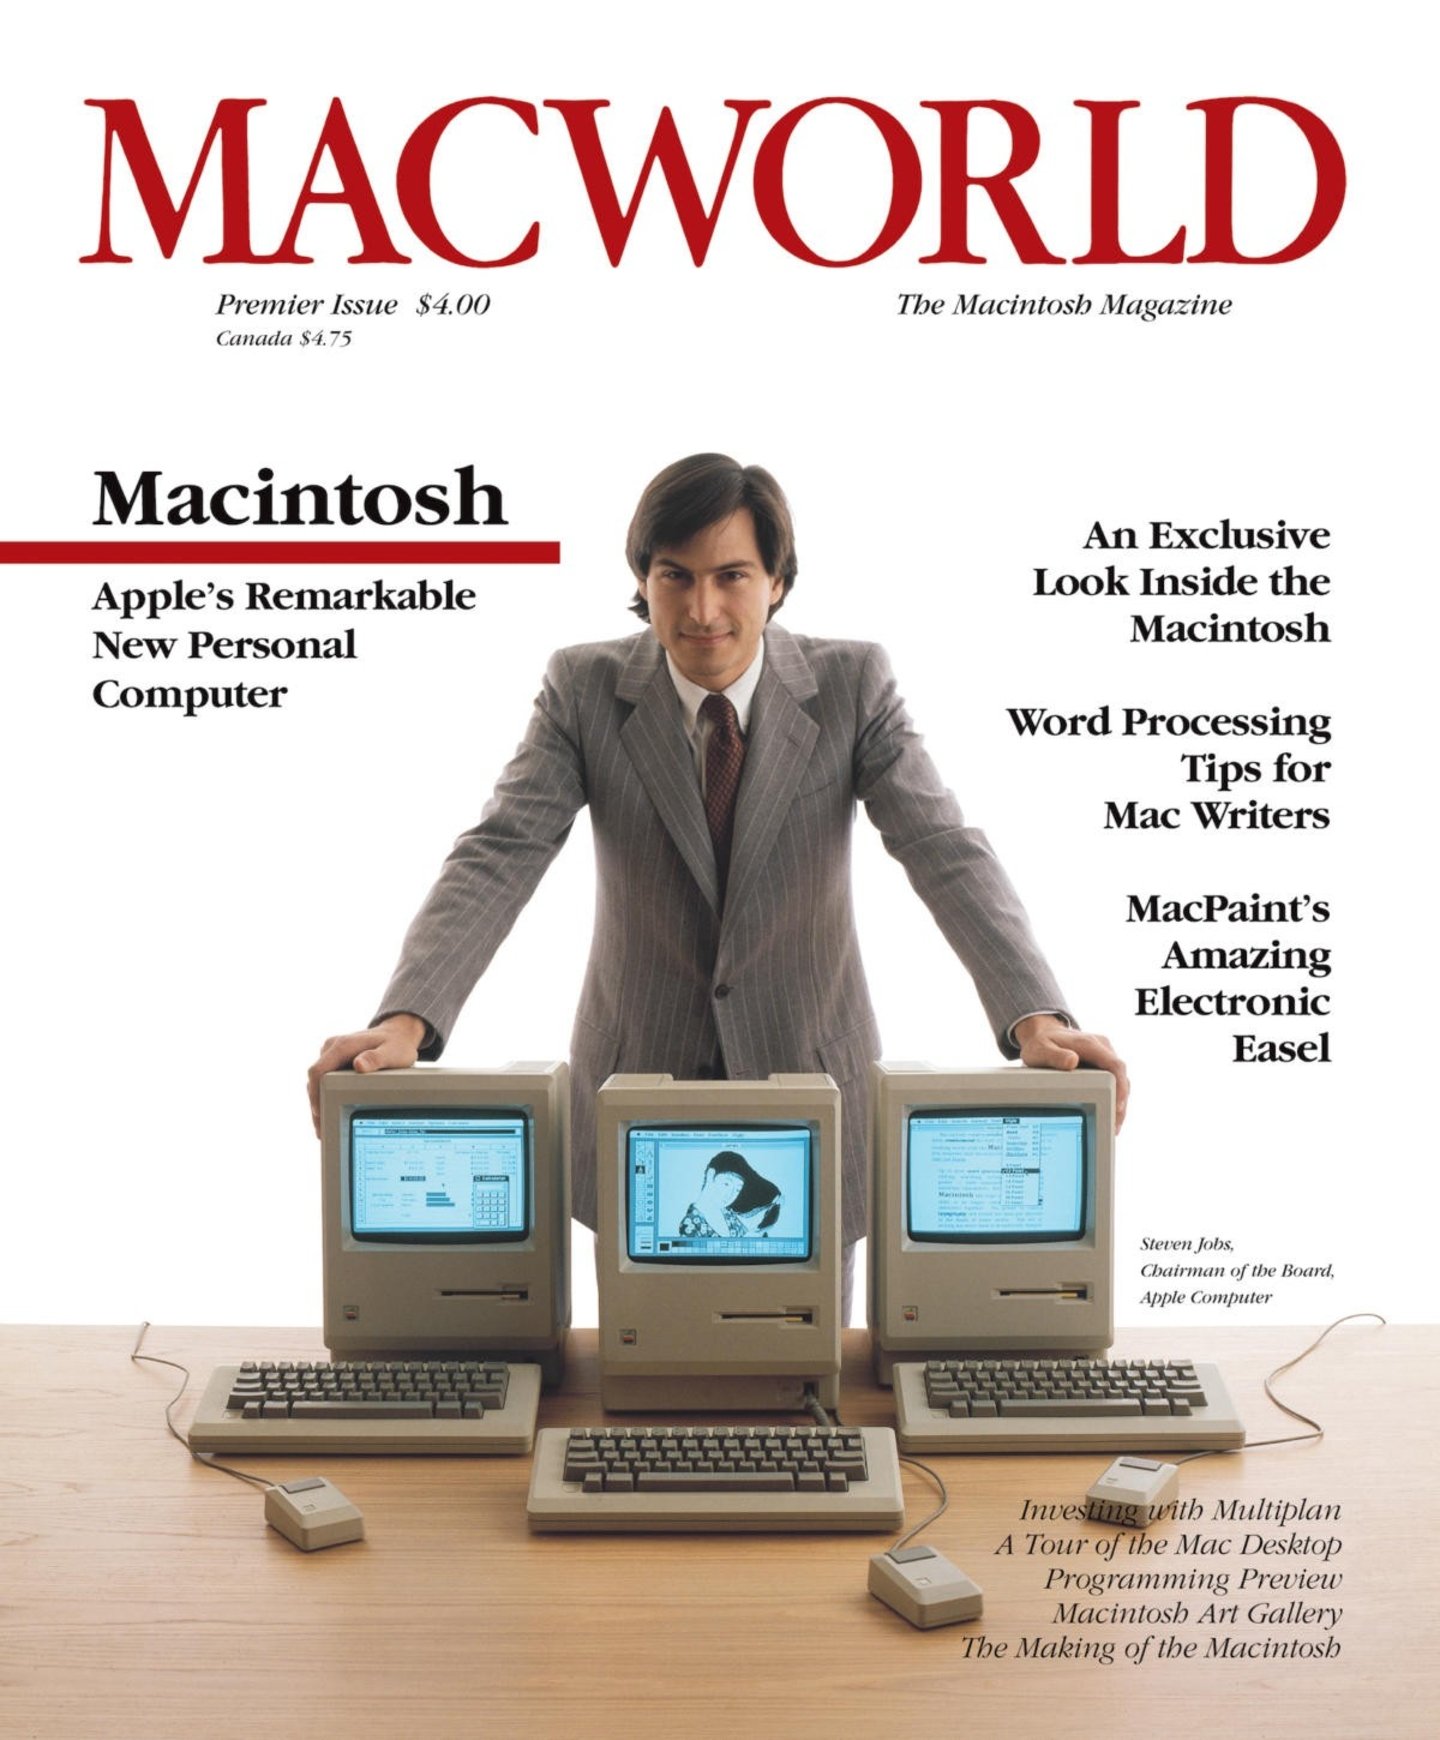 Foto de la portada de Macworld por el lanzamiento del Mac